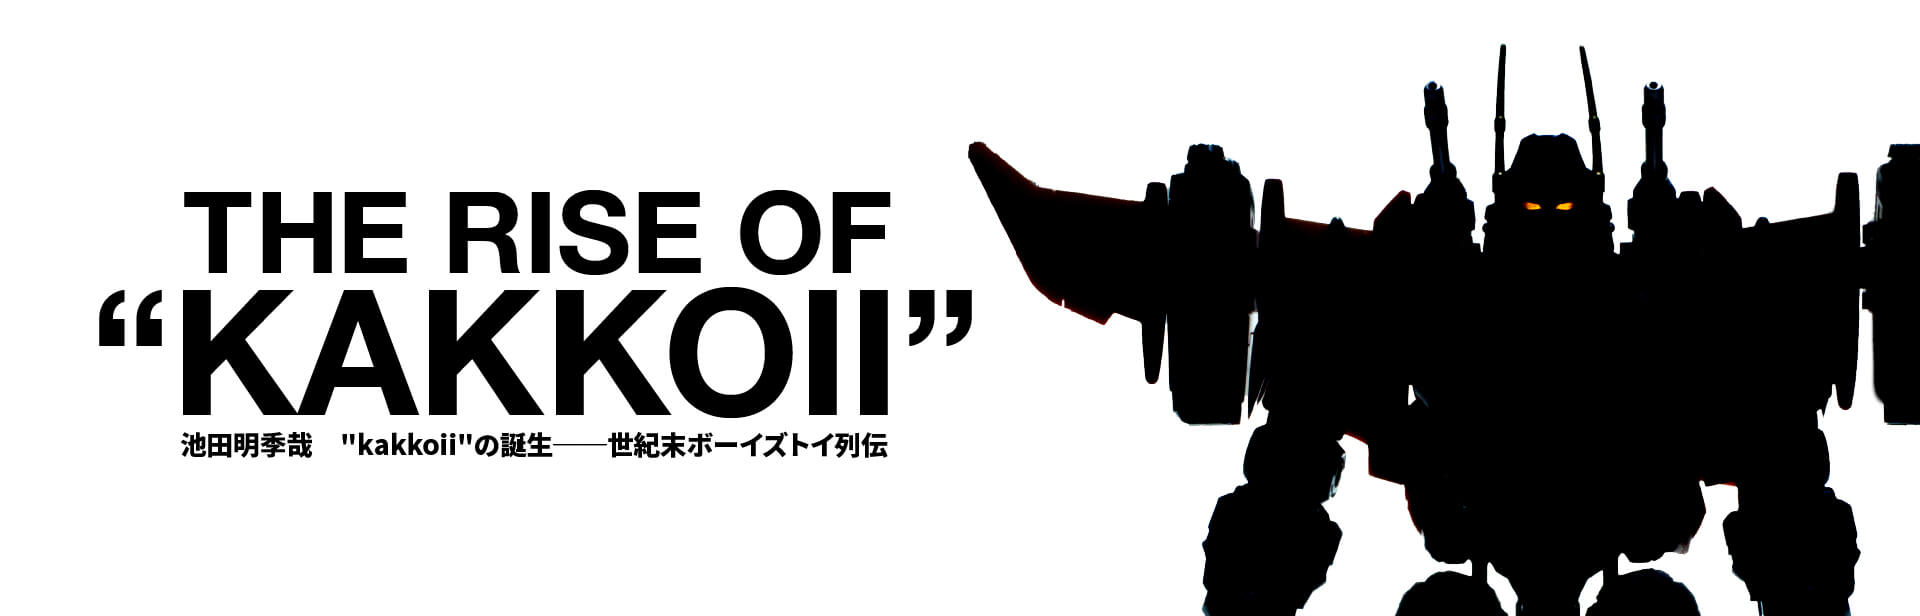 Kakkoii の誕生 第一章 トランスフォーマー ３ 2009年 2016年 西から東へ 軍人から騎士へ 遅いインターネット